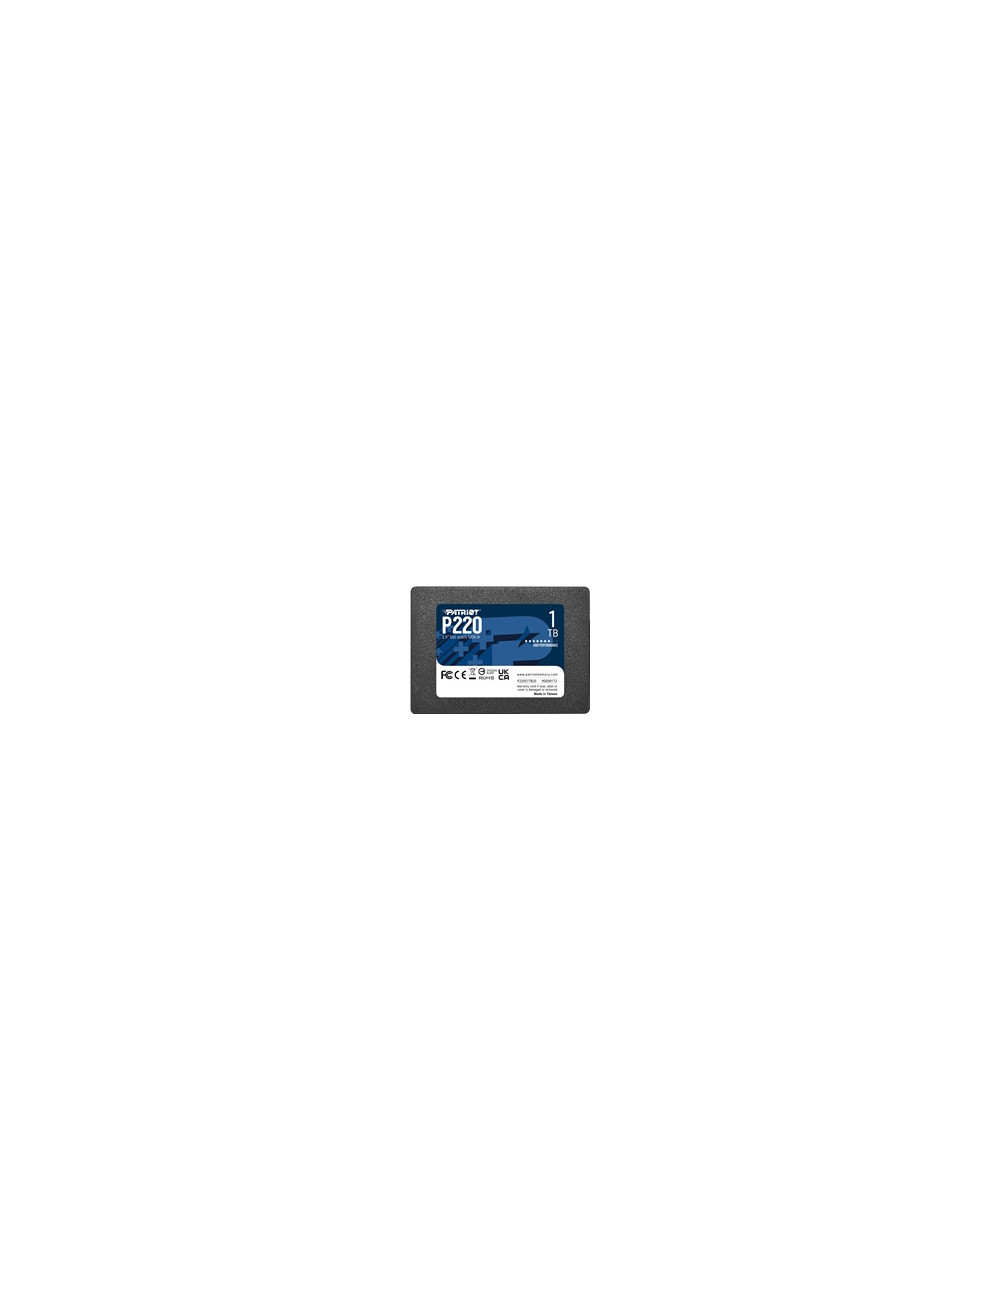 PATRIOT P220 SATA 3 1TB SSD 550/500MB/s